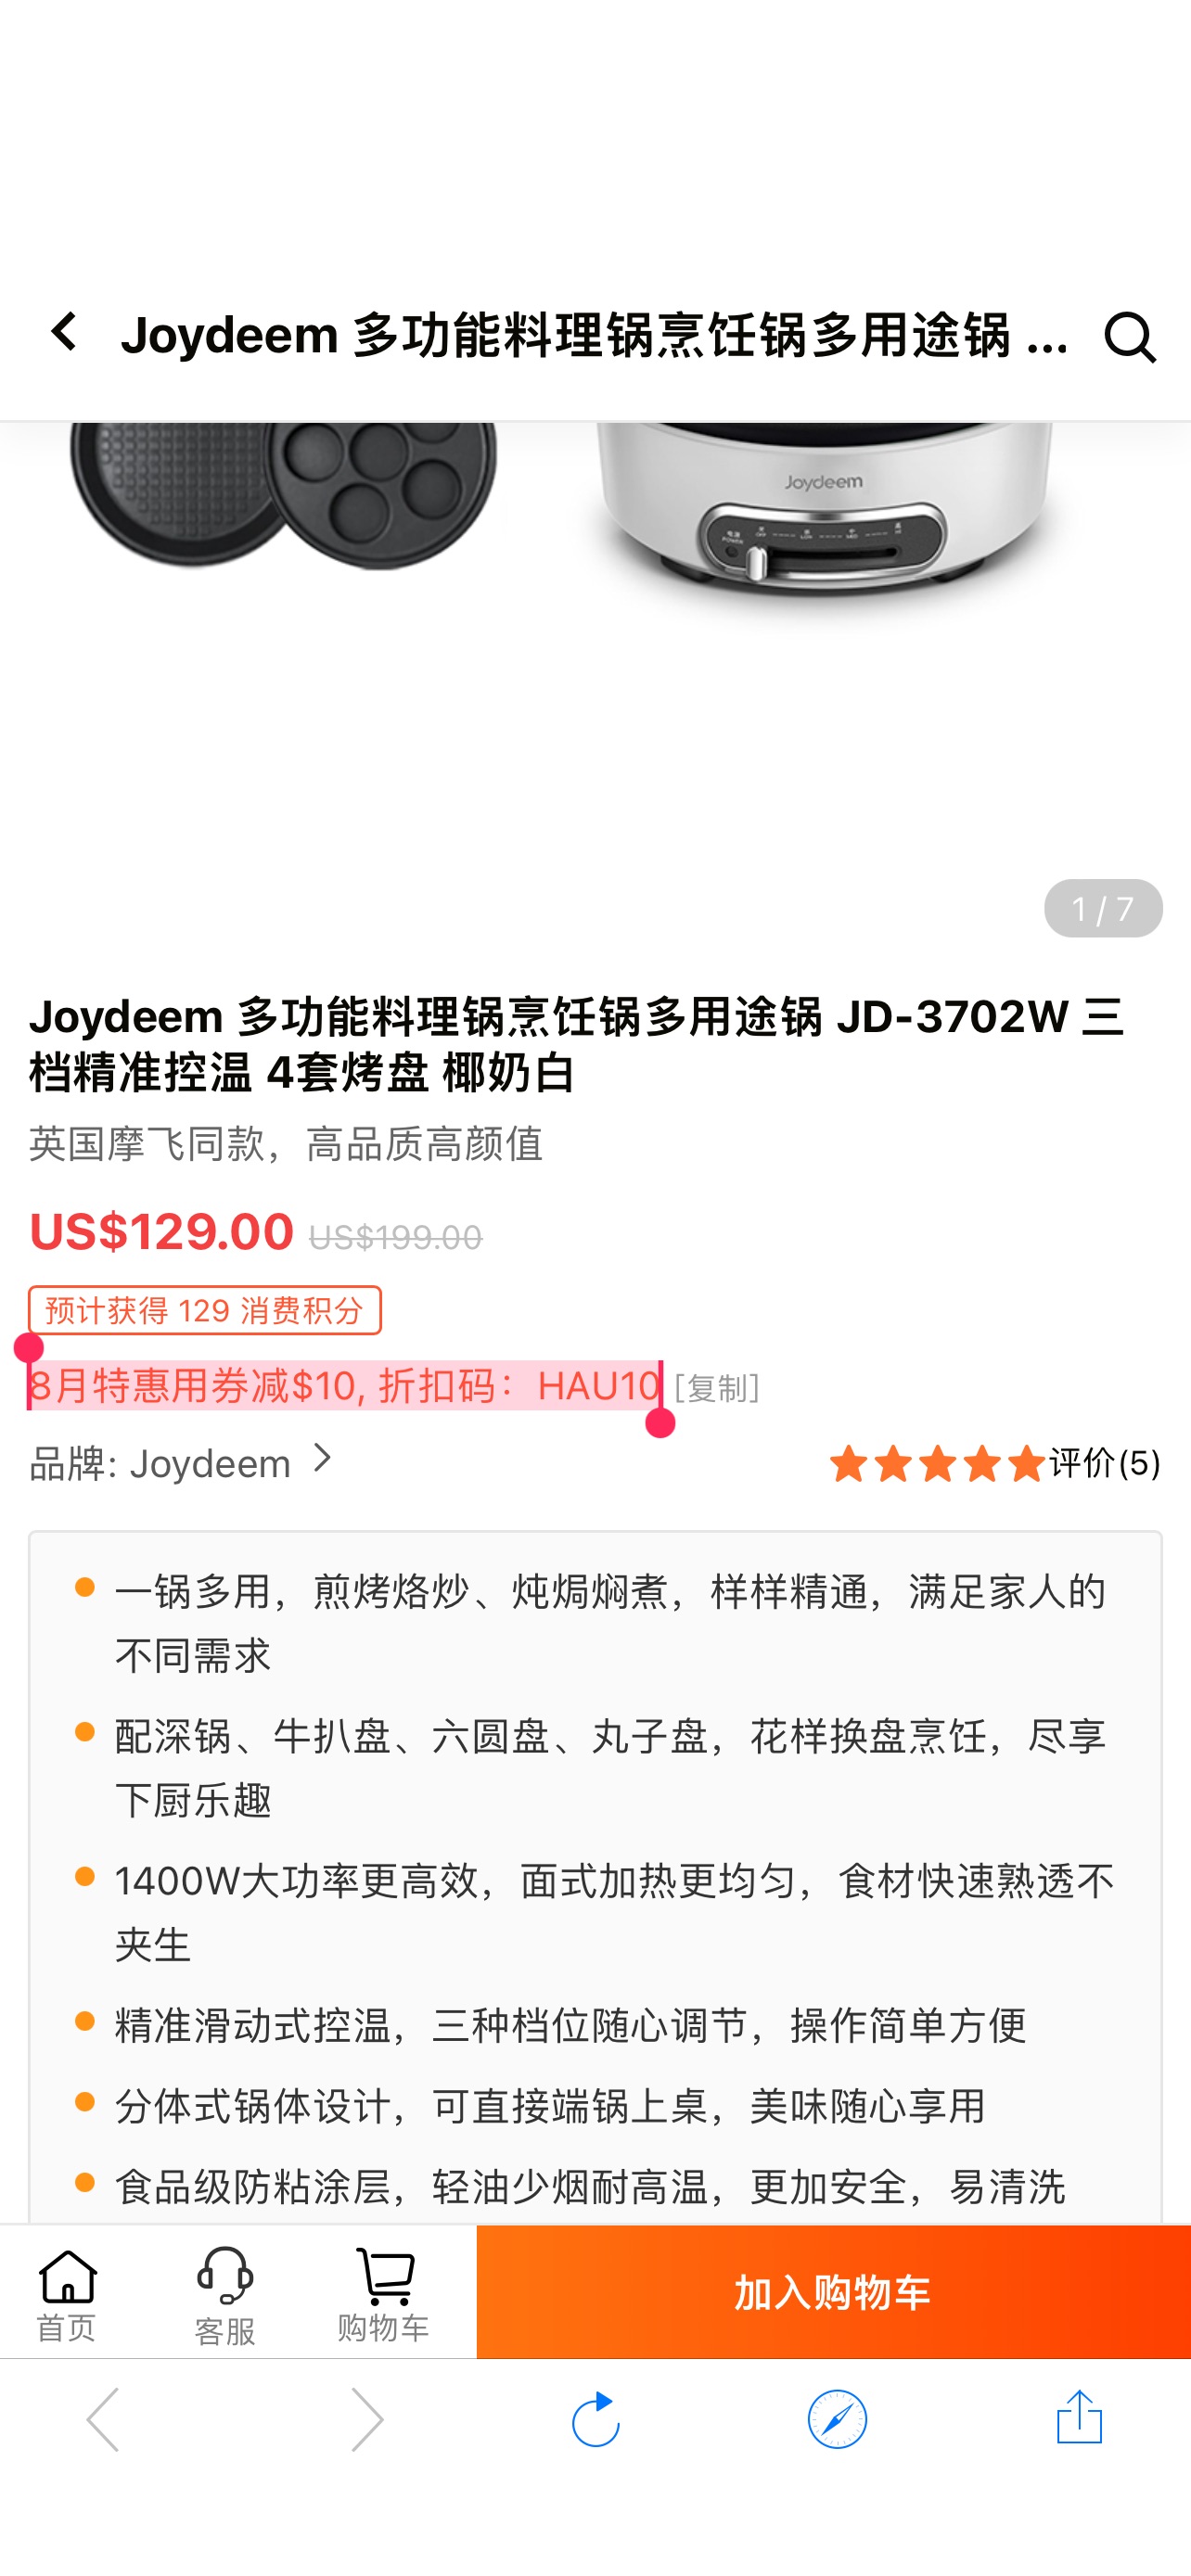 多功能锅推荐 | Joydeem 多功能料理锅烹饪锅JD-3702W 可拆盘易清洗 椰奶白